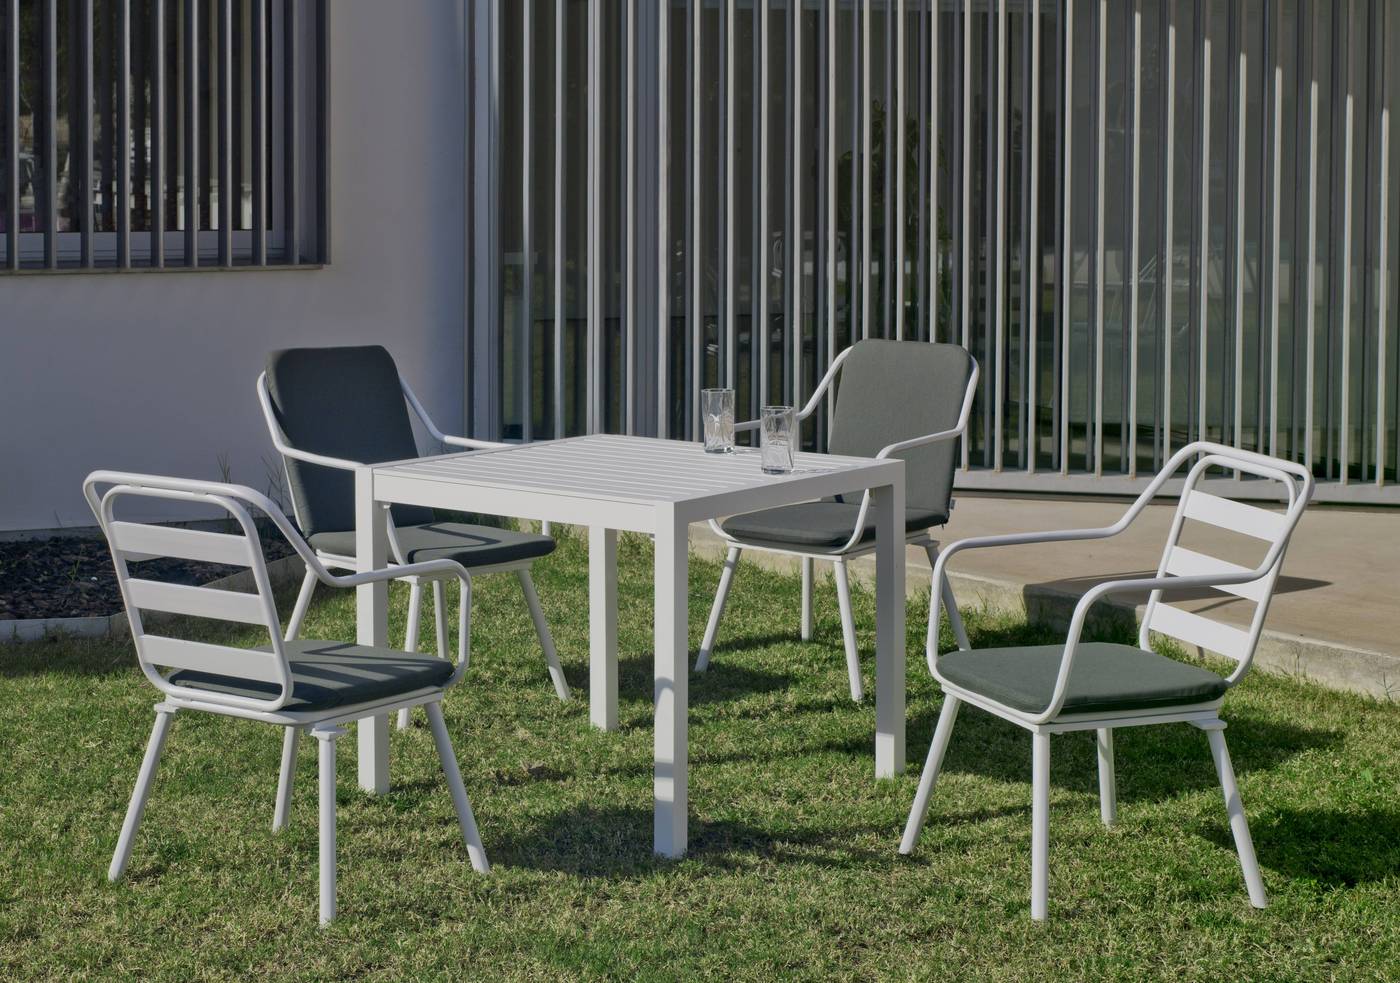 Set Aluminio Palma-Minerva 90-4 - Conjunto aluminio luxe: mesa cuadrada de 90 cm. + 4 sillones. Disponible en color blanco y color antracita.